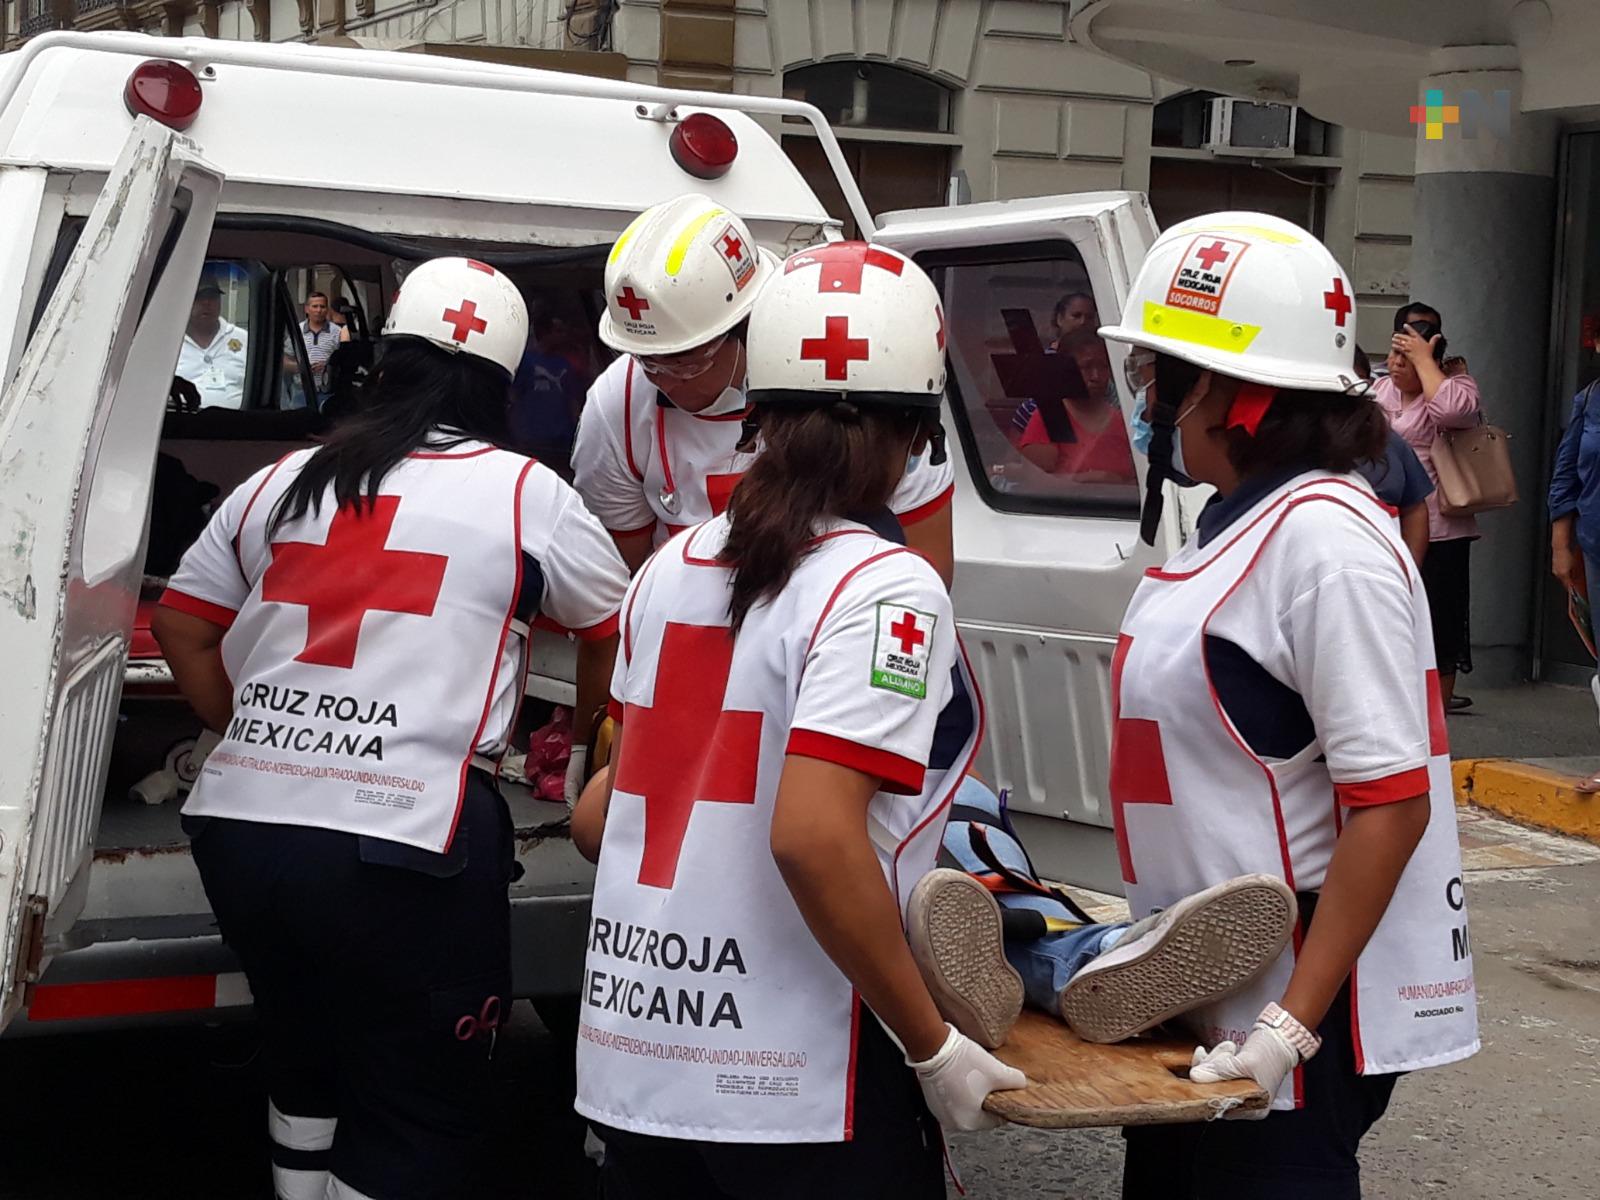 Municipio de Tuxpan apoyará a Cruz Roja Mexicana con mantenimiento e insumos